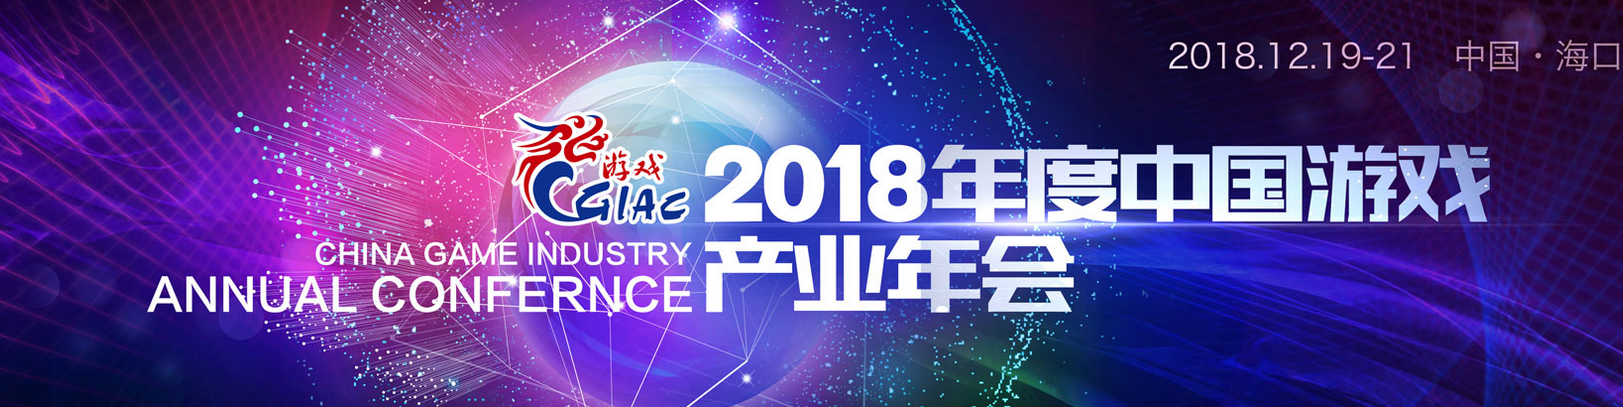 心怀责任 共商发展 2018年度中国游戏产业年会12月19日举办